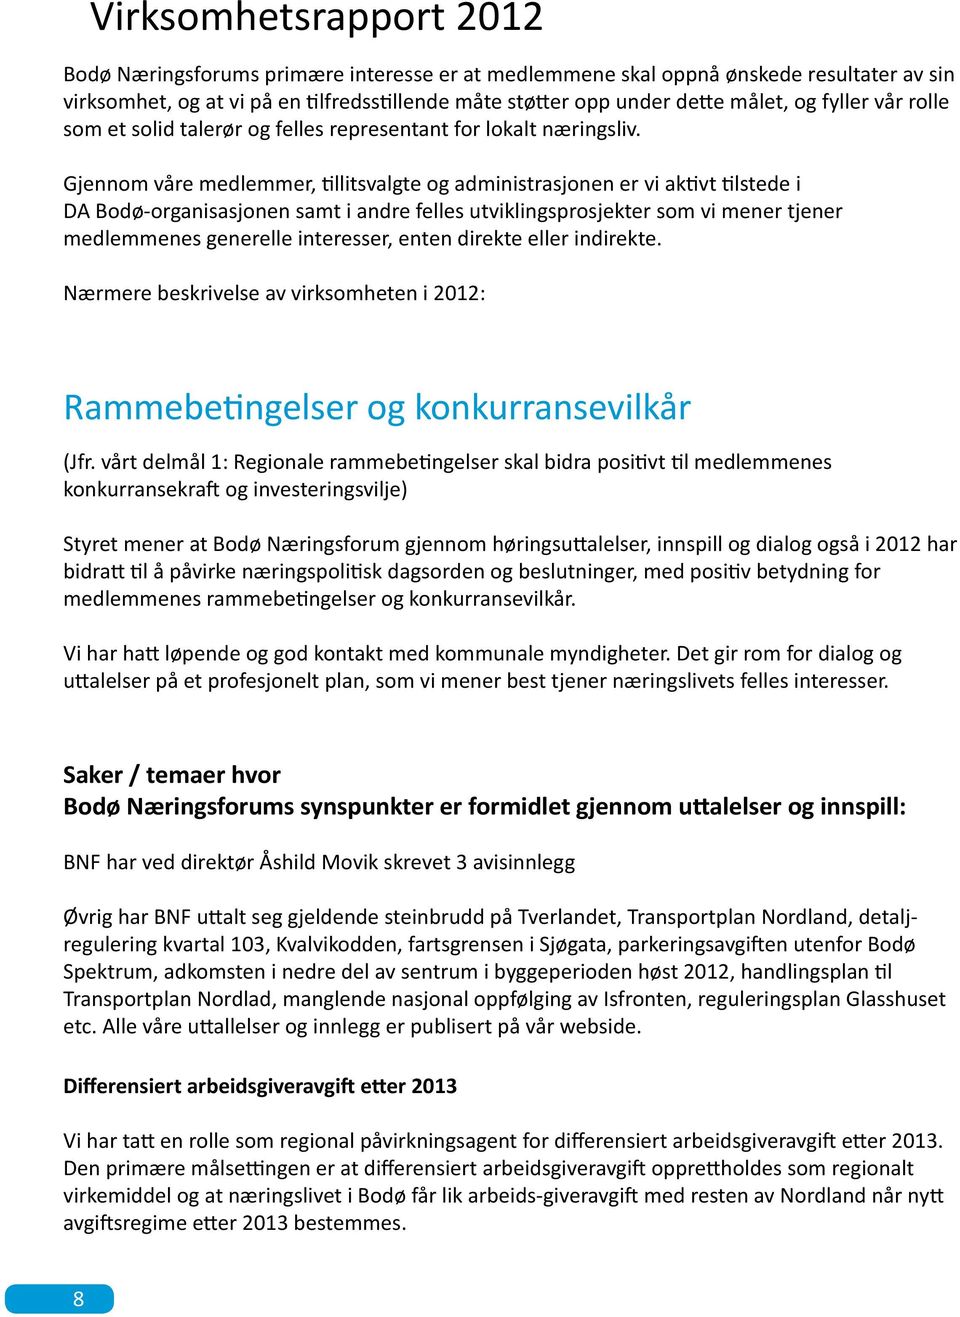 Gjennom våre medlemmer, tillitsvalgte og administrasjonen er vi aktivt tilstede i DA Bodø-organisasjonen samt i andre felles utviklingsprosjekter som vi mener tjener medlemmenes generelle interesser,